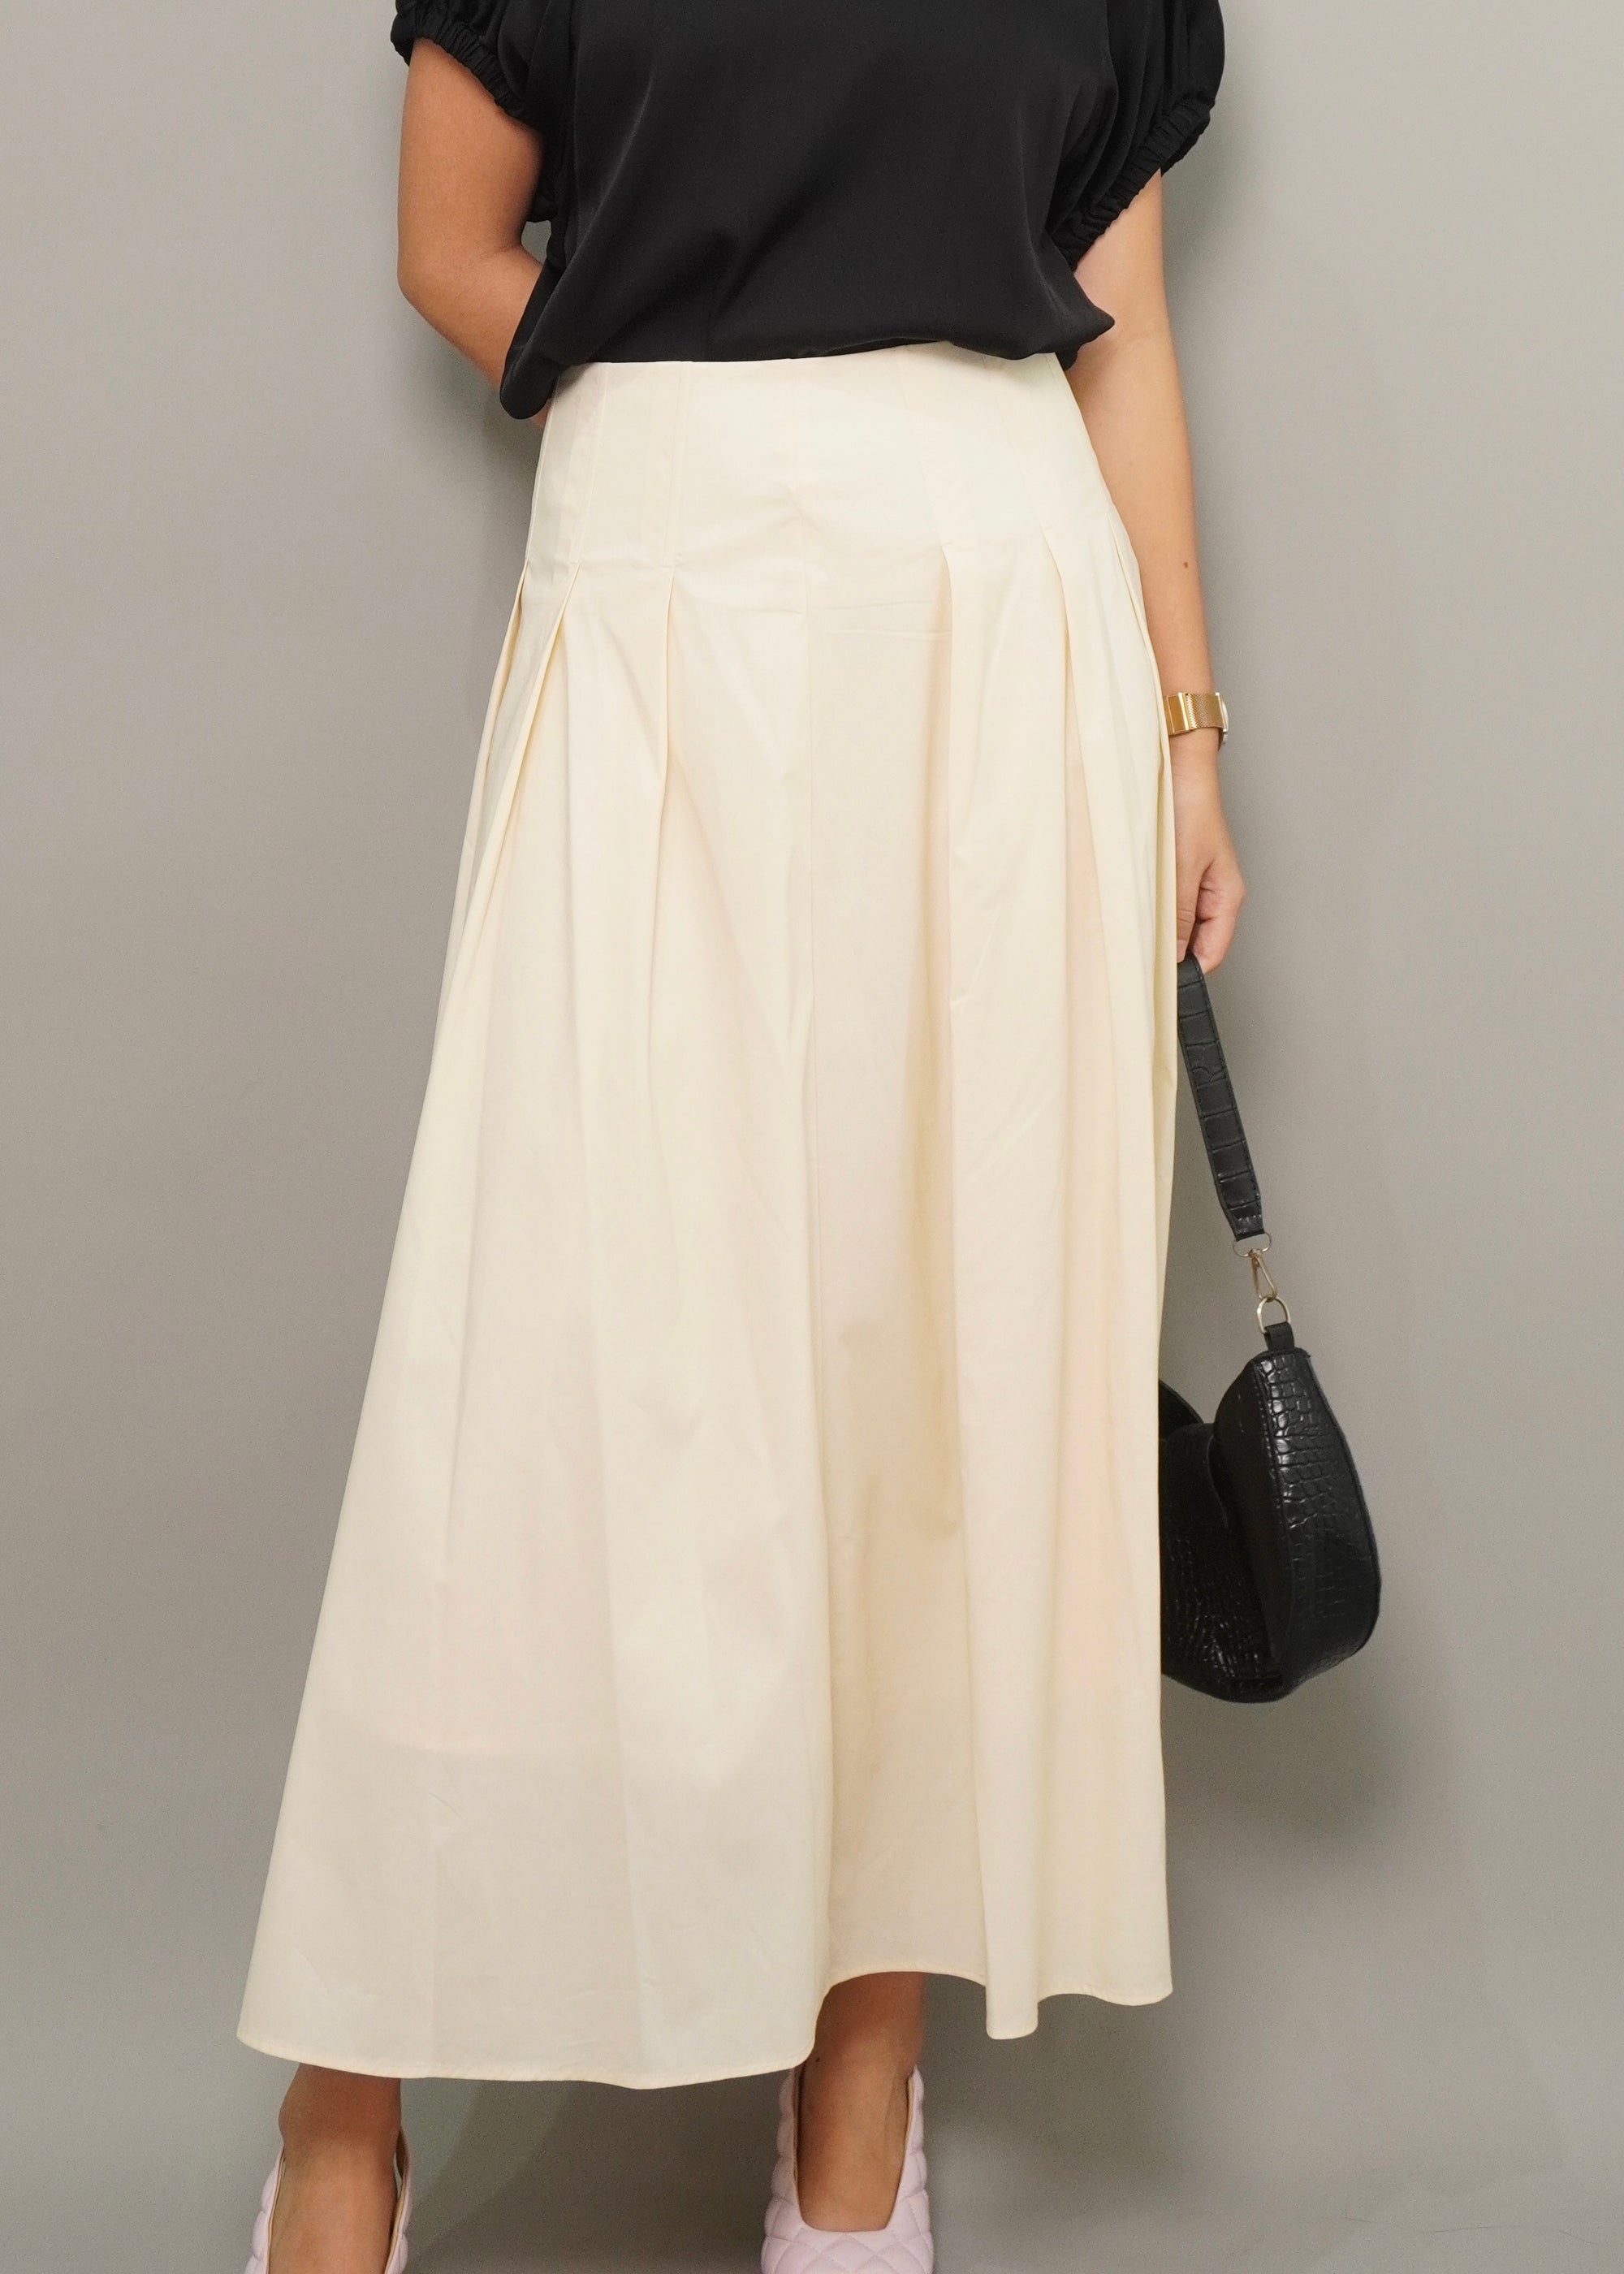 Sorel Fold Pleated Flair Skirt